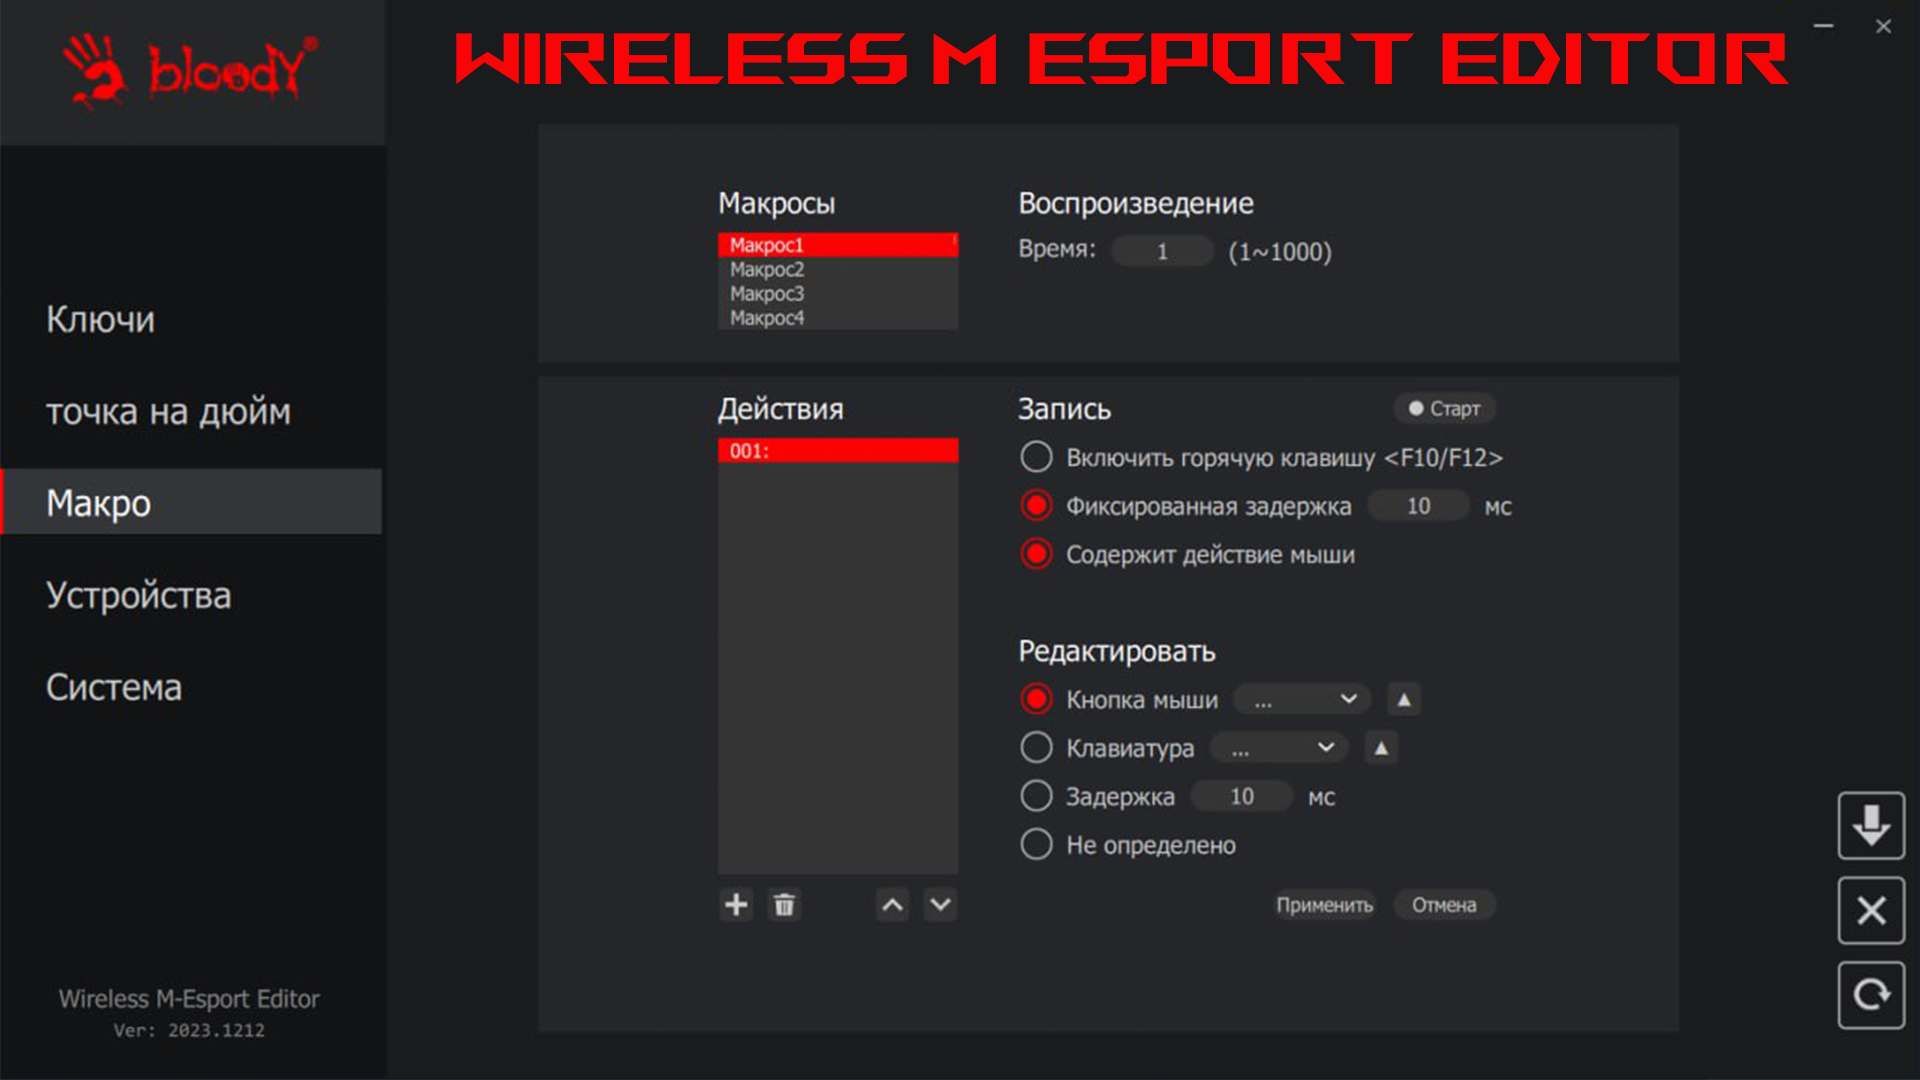 Wireless M Esport Editor от Bloody. Как установить макросы?